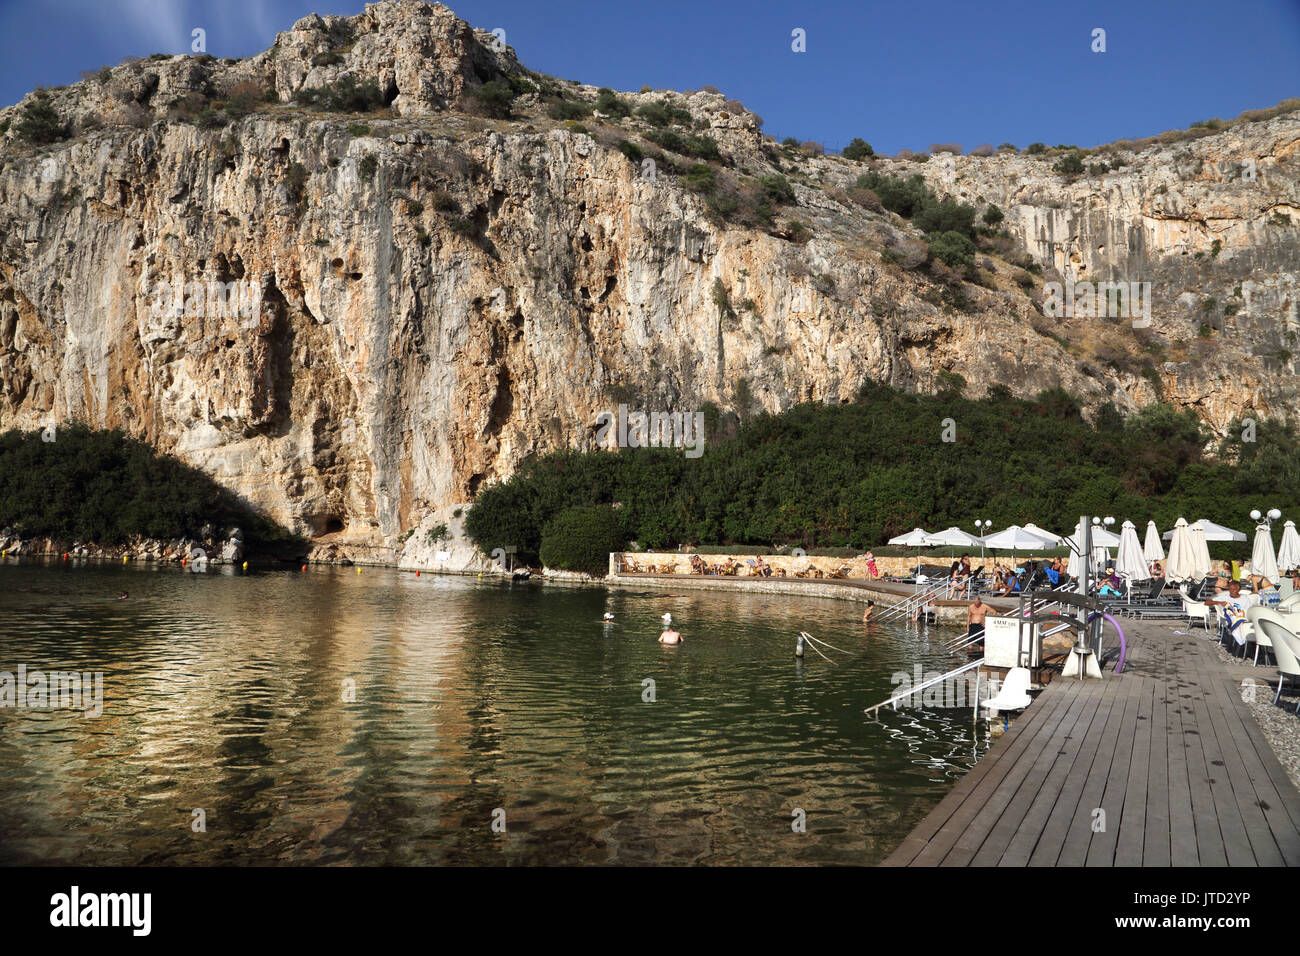 Vouliagmeni Atene Grecia turisti che nuotano nel lago Vouliagmeni una spa naturale - una volta era una caverna ma il tetto della grotta è caduto a causa dell'erosione del Foto Stock